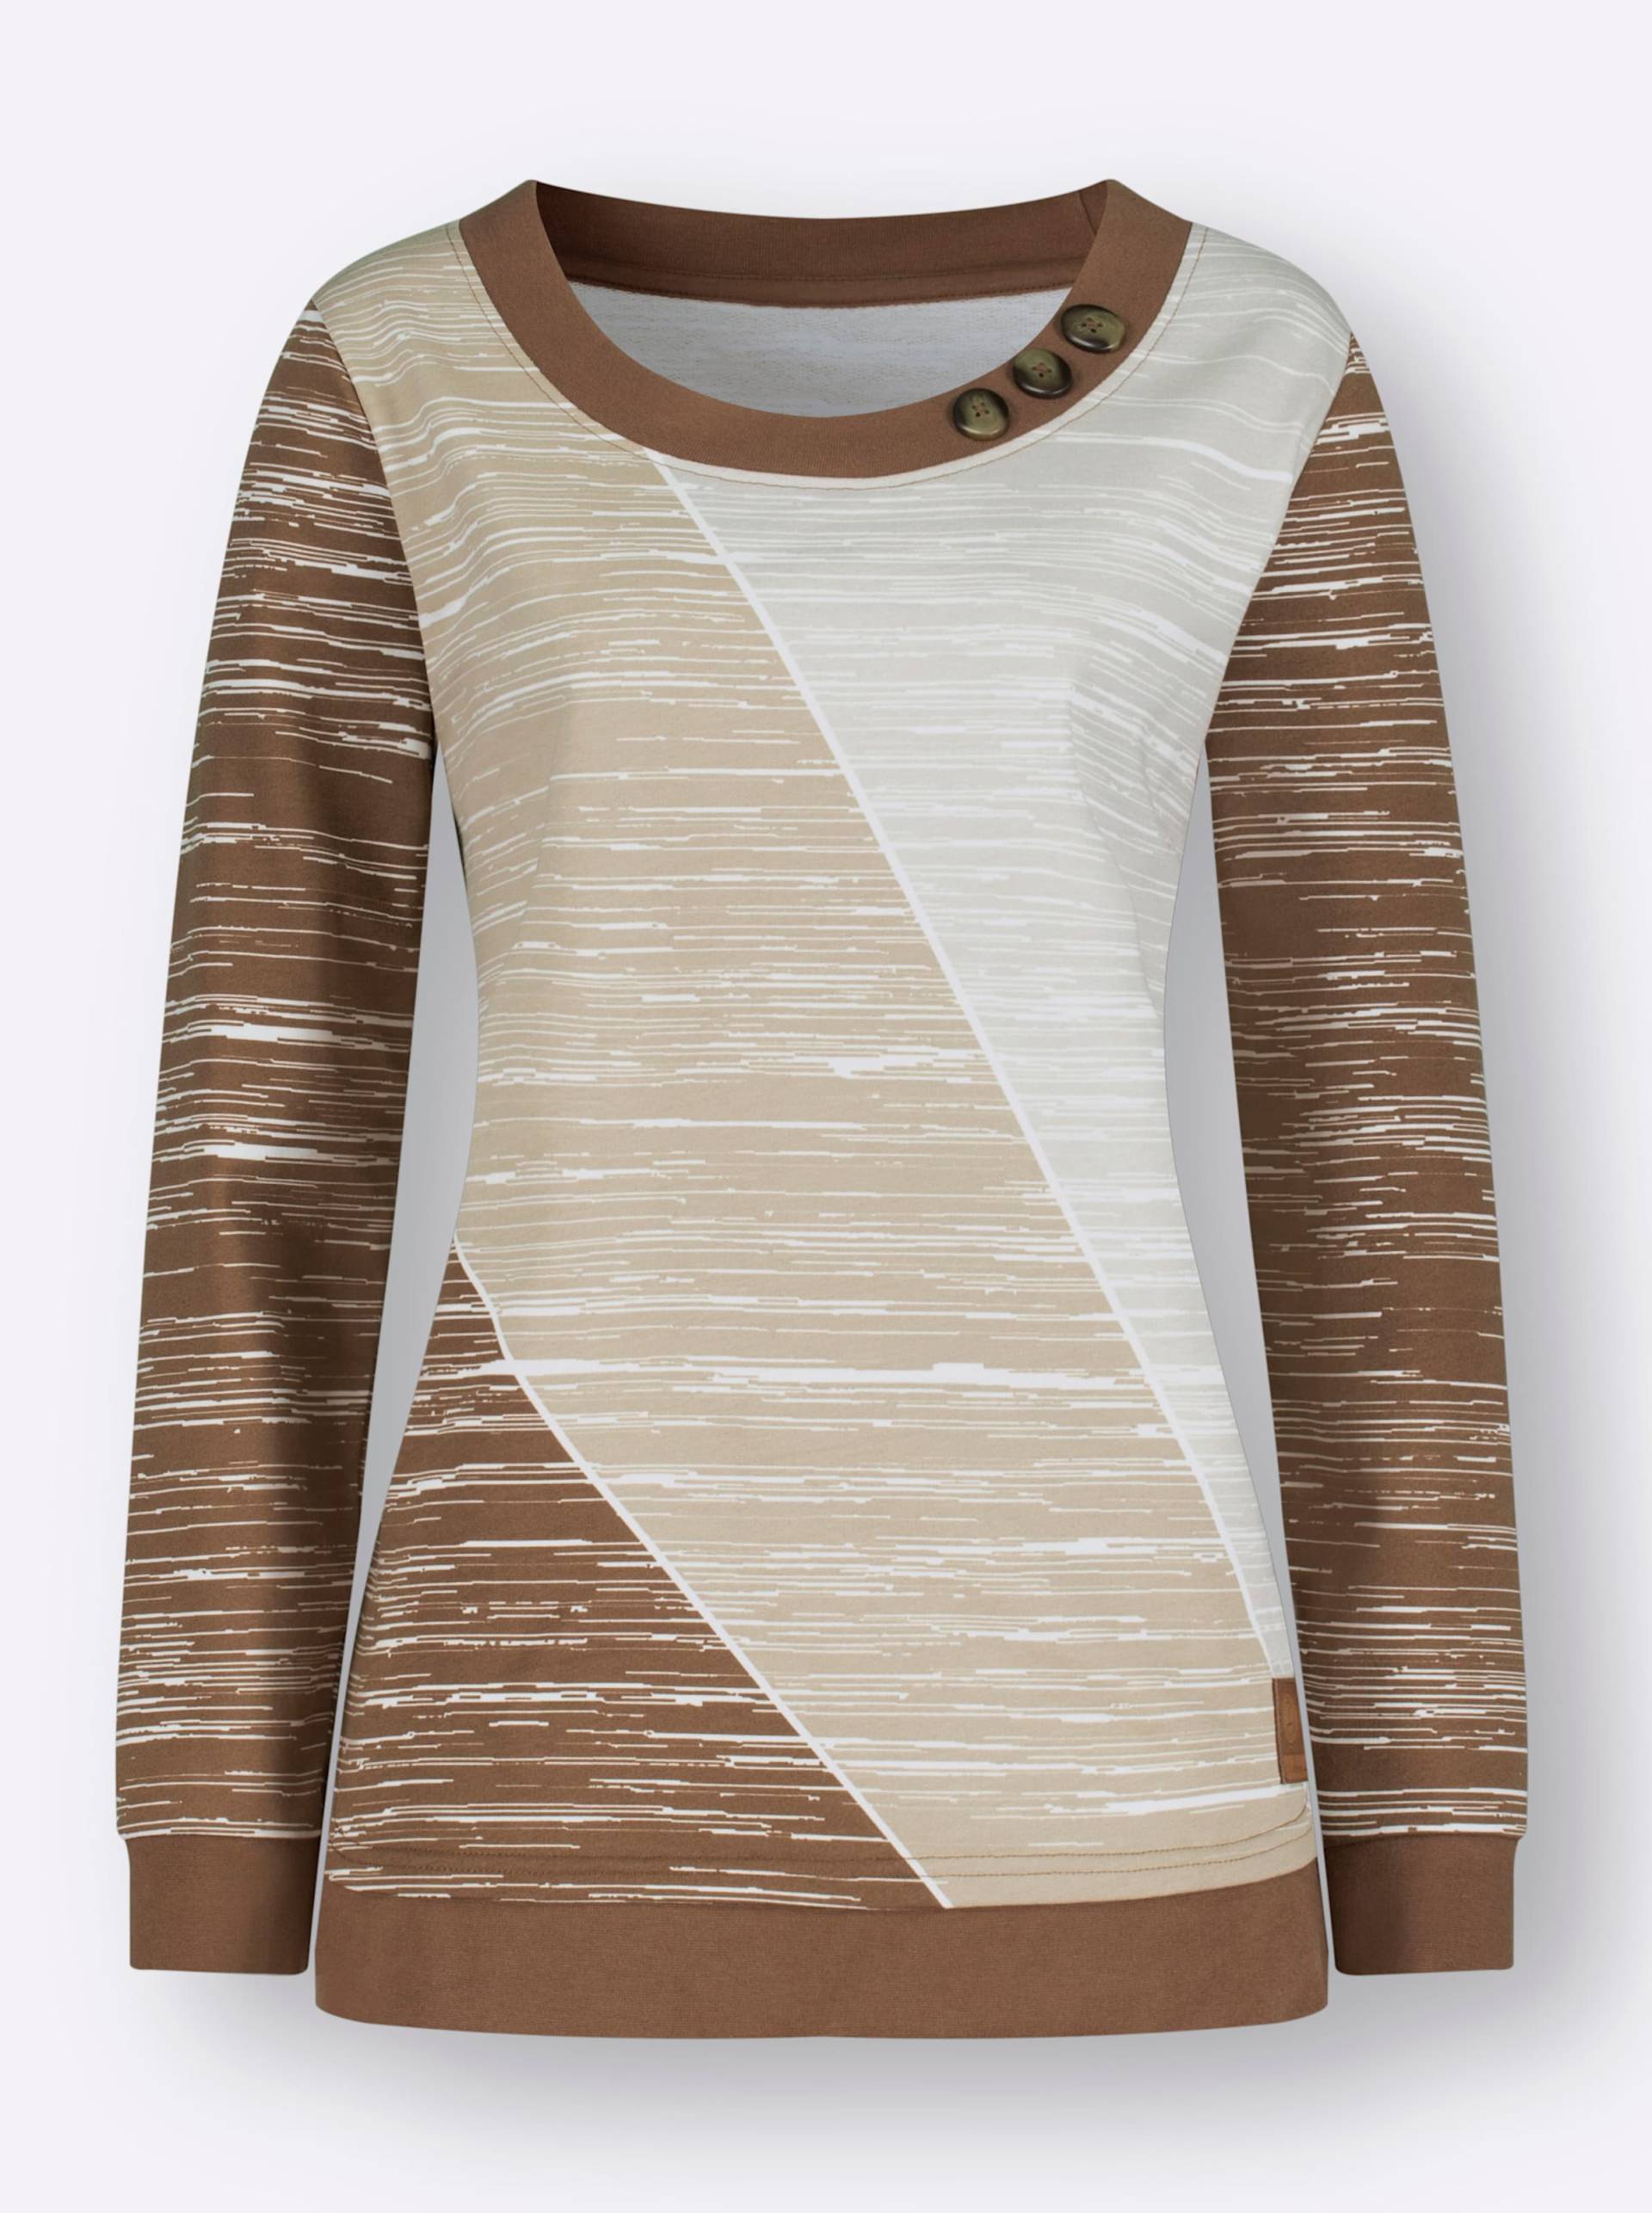 Sweatshirt in braun-ecru-bedruckt von heine